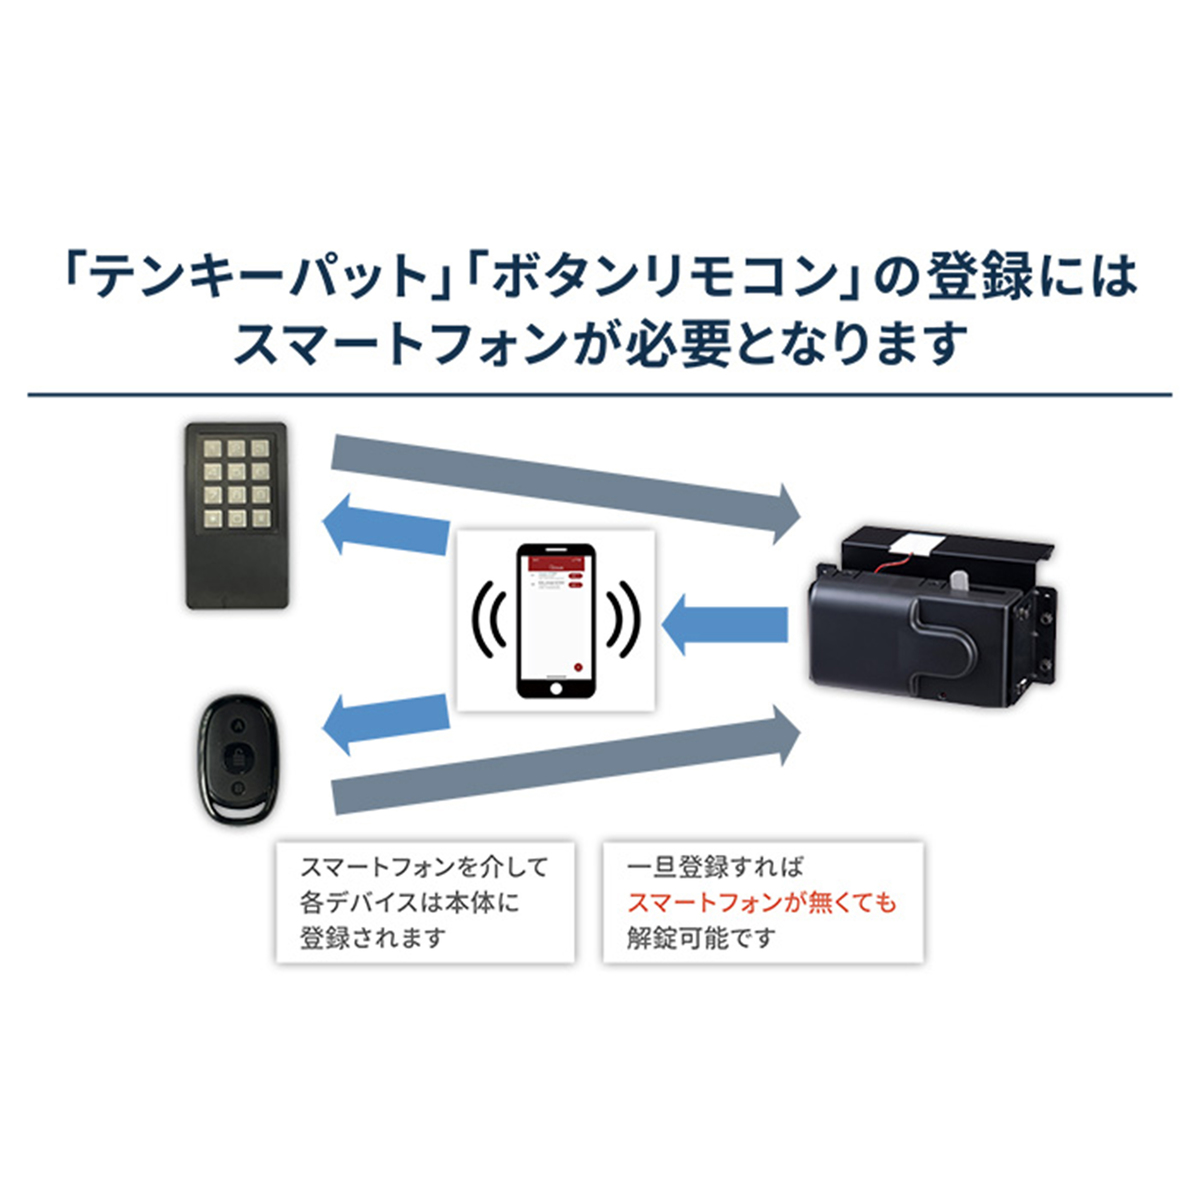 セリュール工事不要オートロック錠アミュレット リモコンセットブラック - QVC.jp